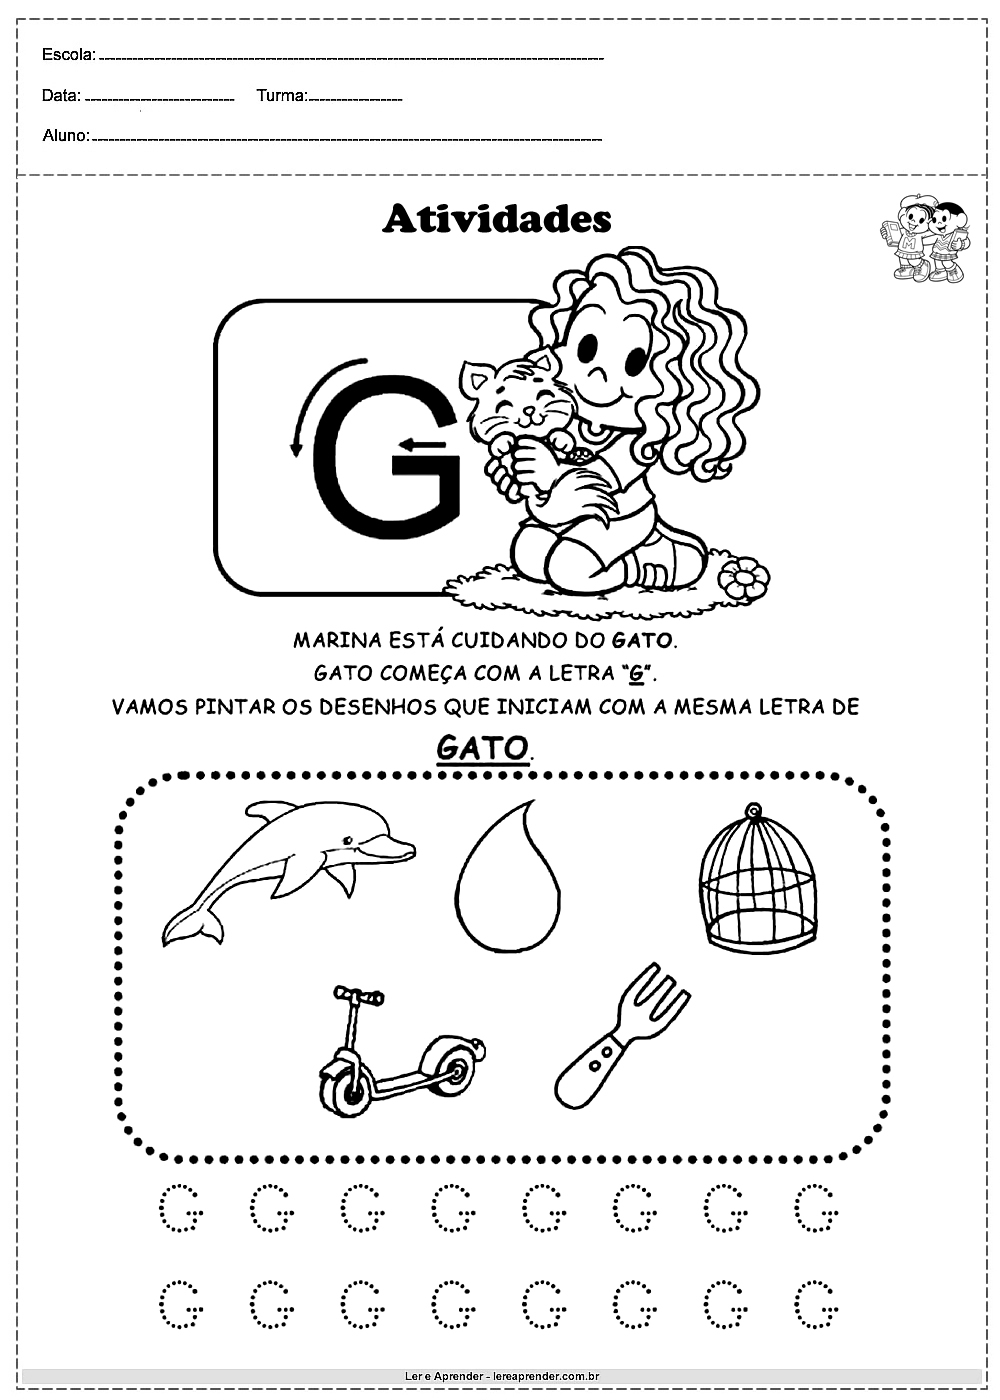 Plano de aula pronto de portugues para educação infantil